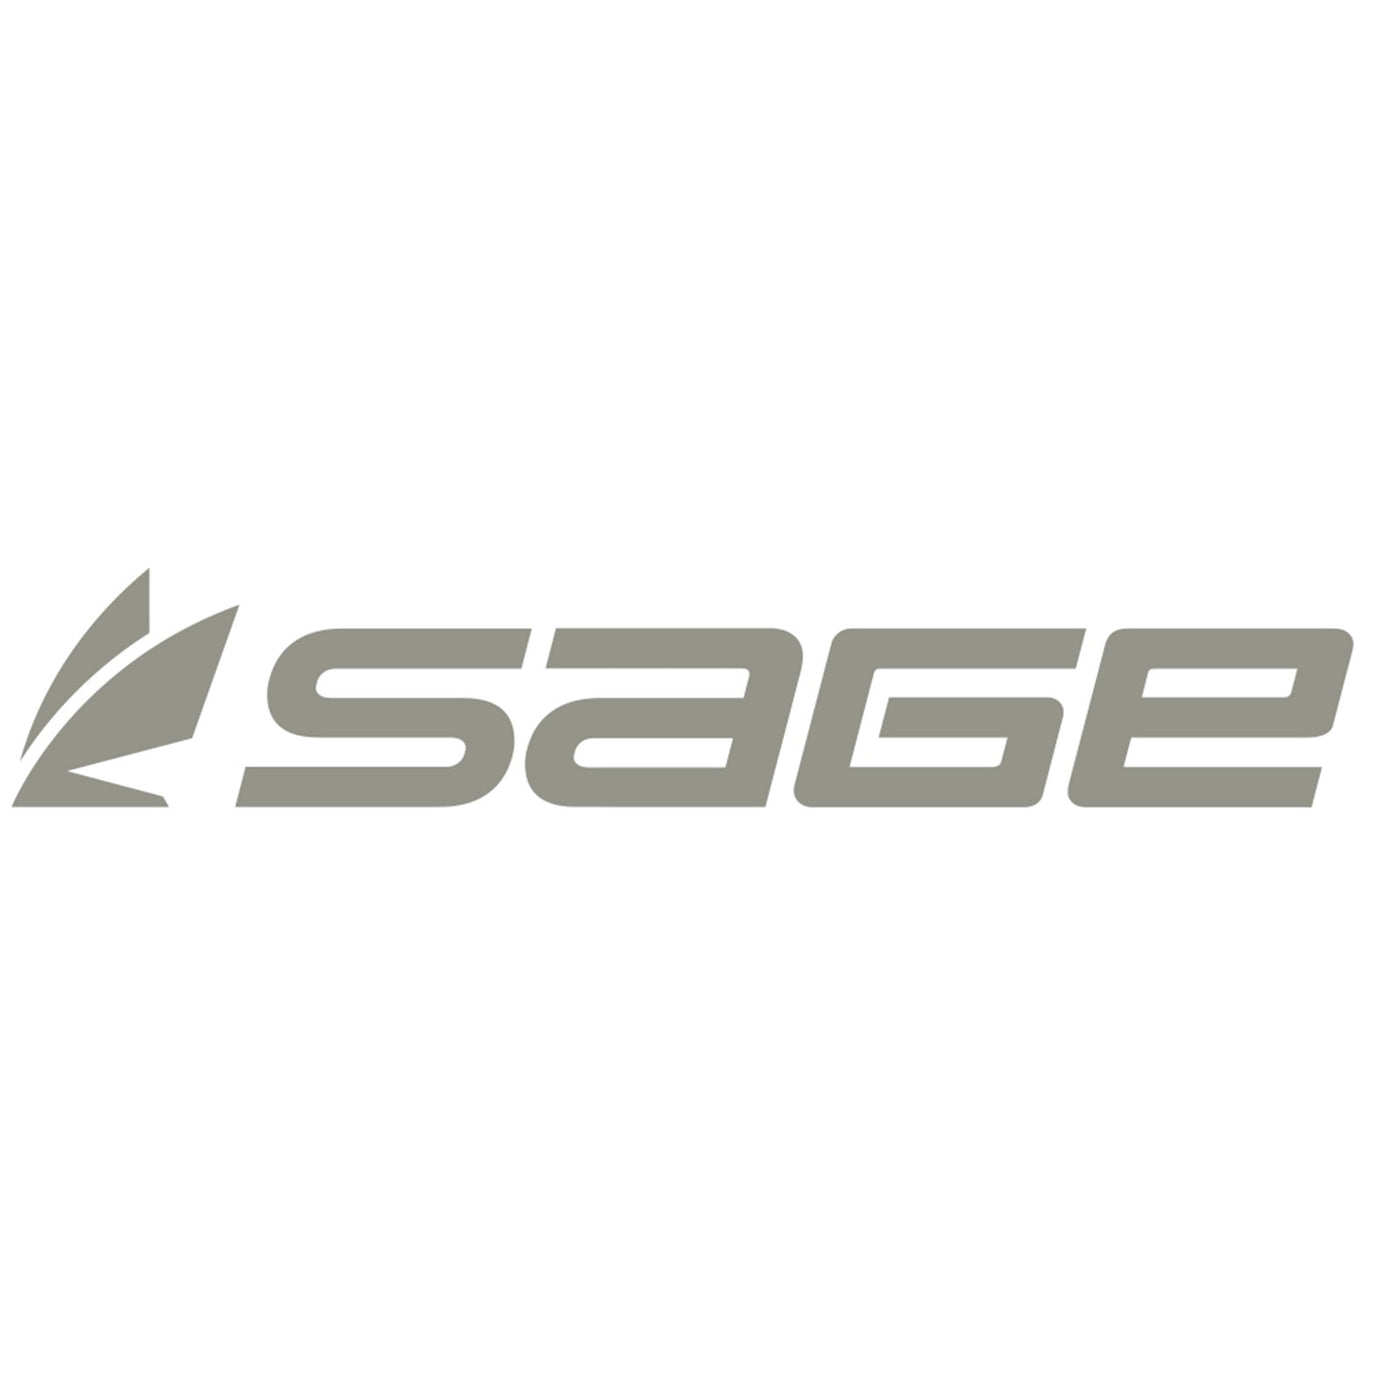 Sage Logo Thermal Cut Sticker 7.5"